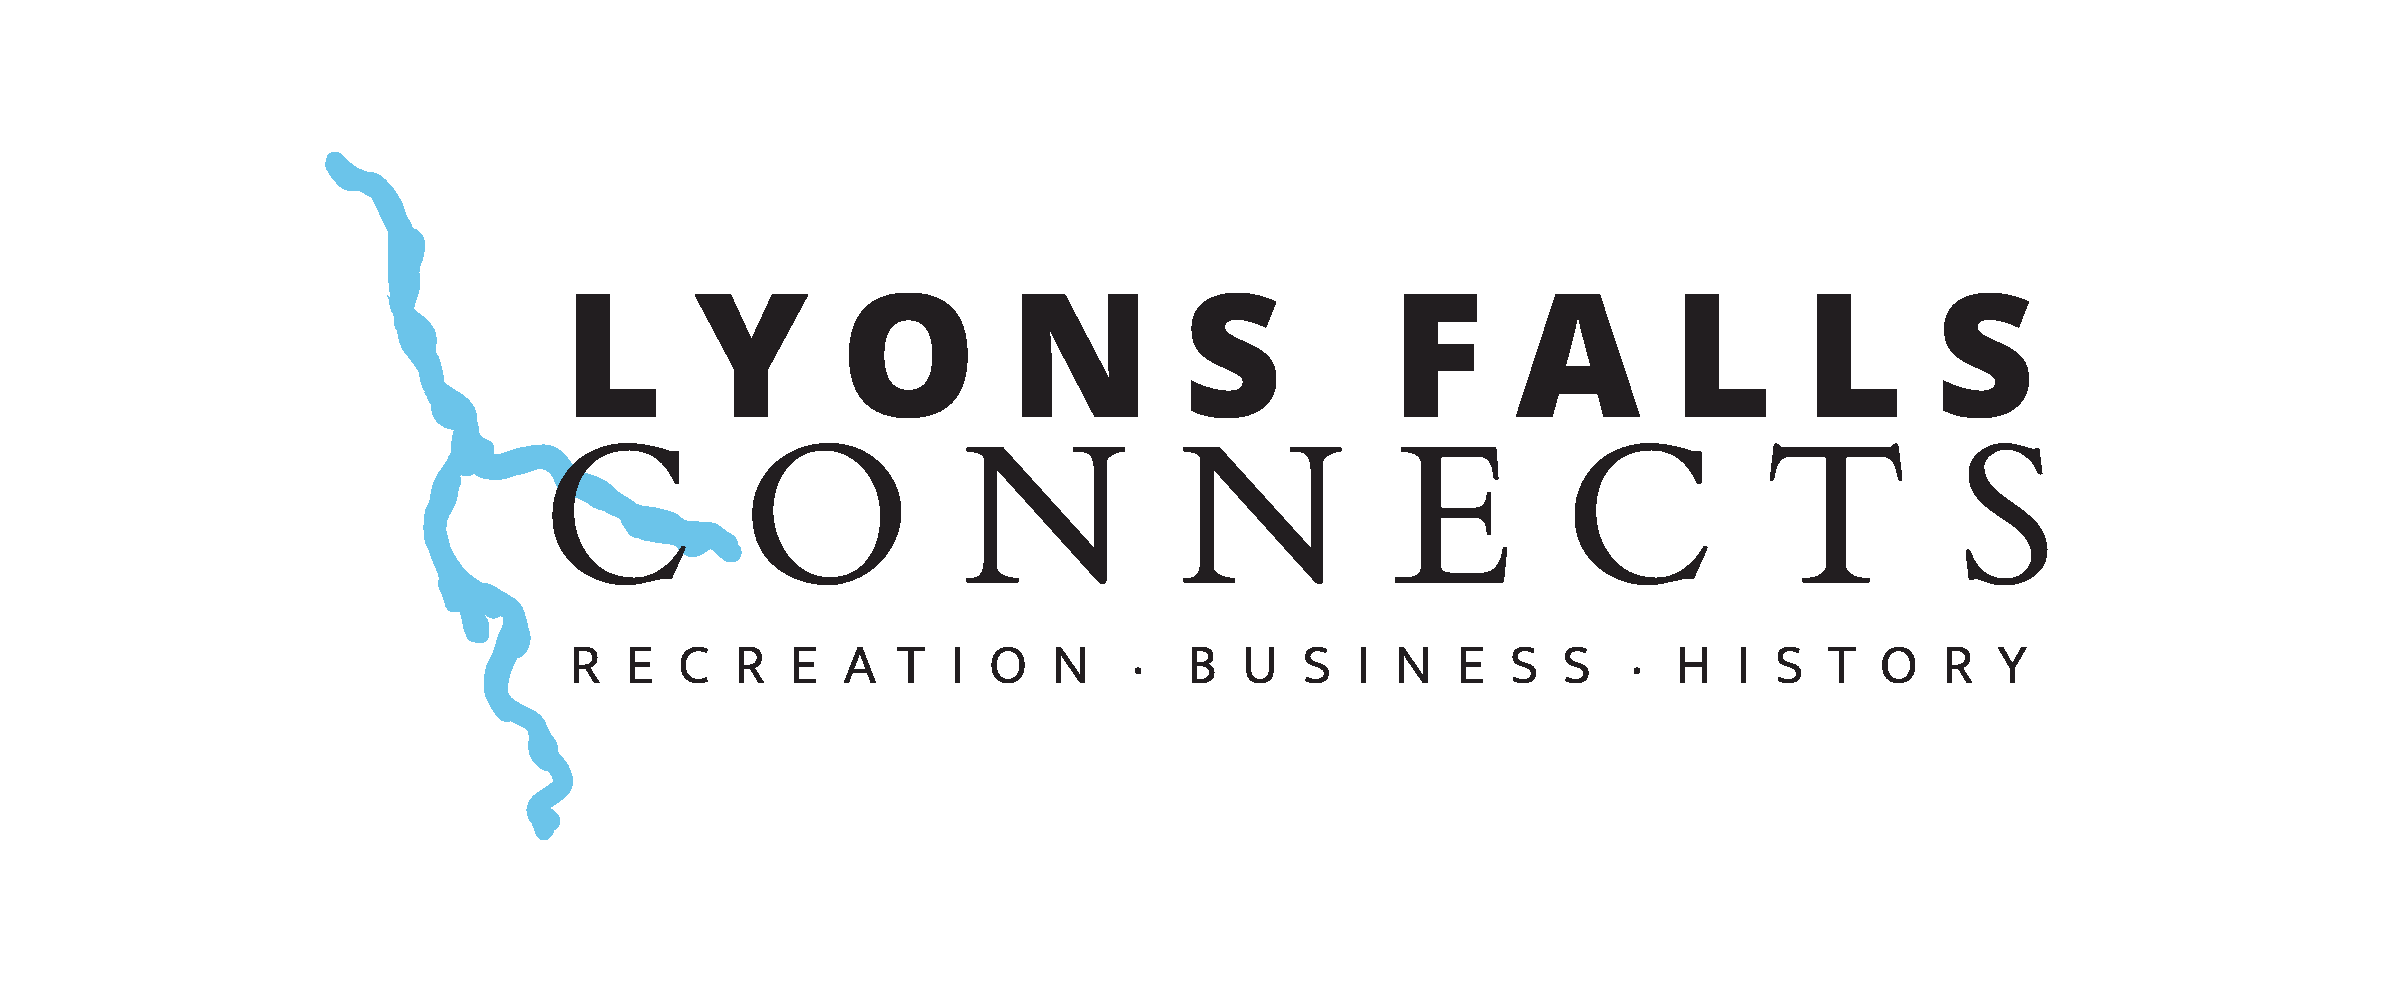 Lyon Falls Logo Update FINAL Page 1